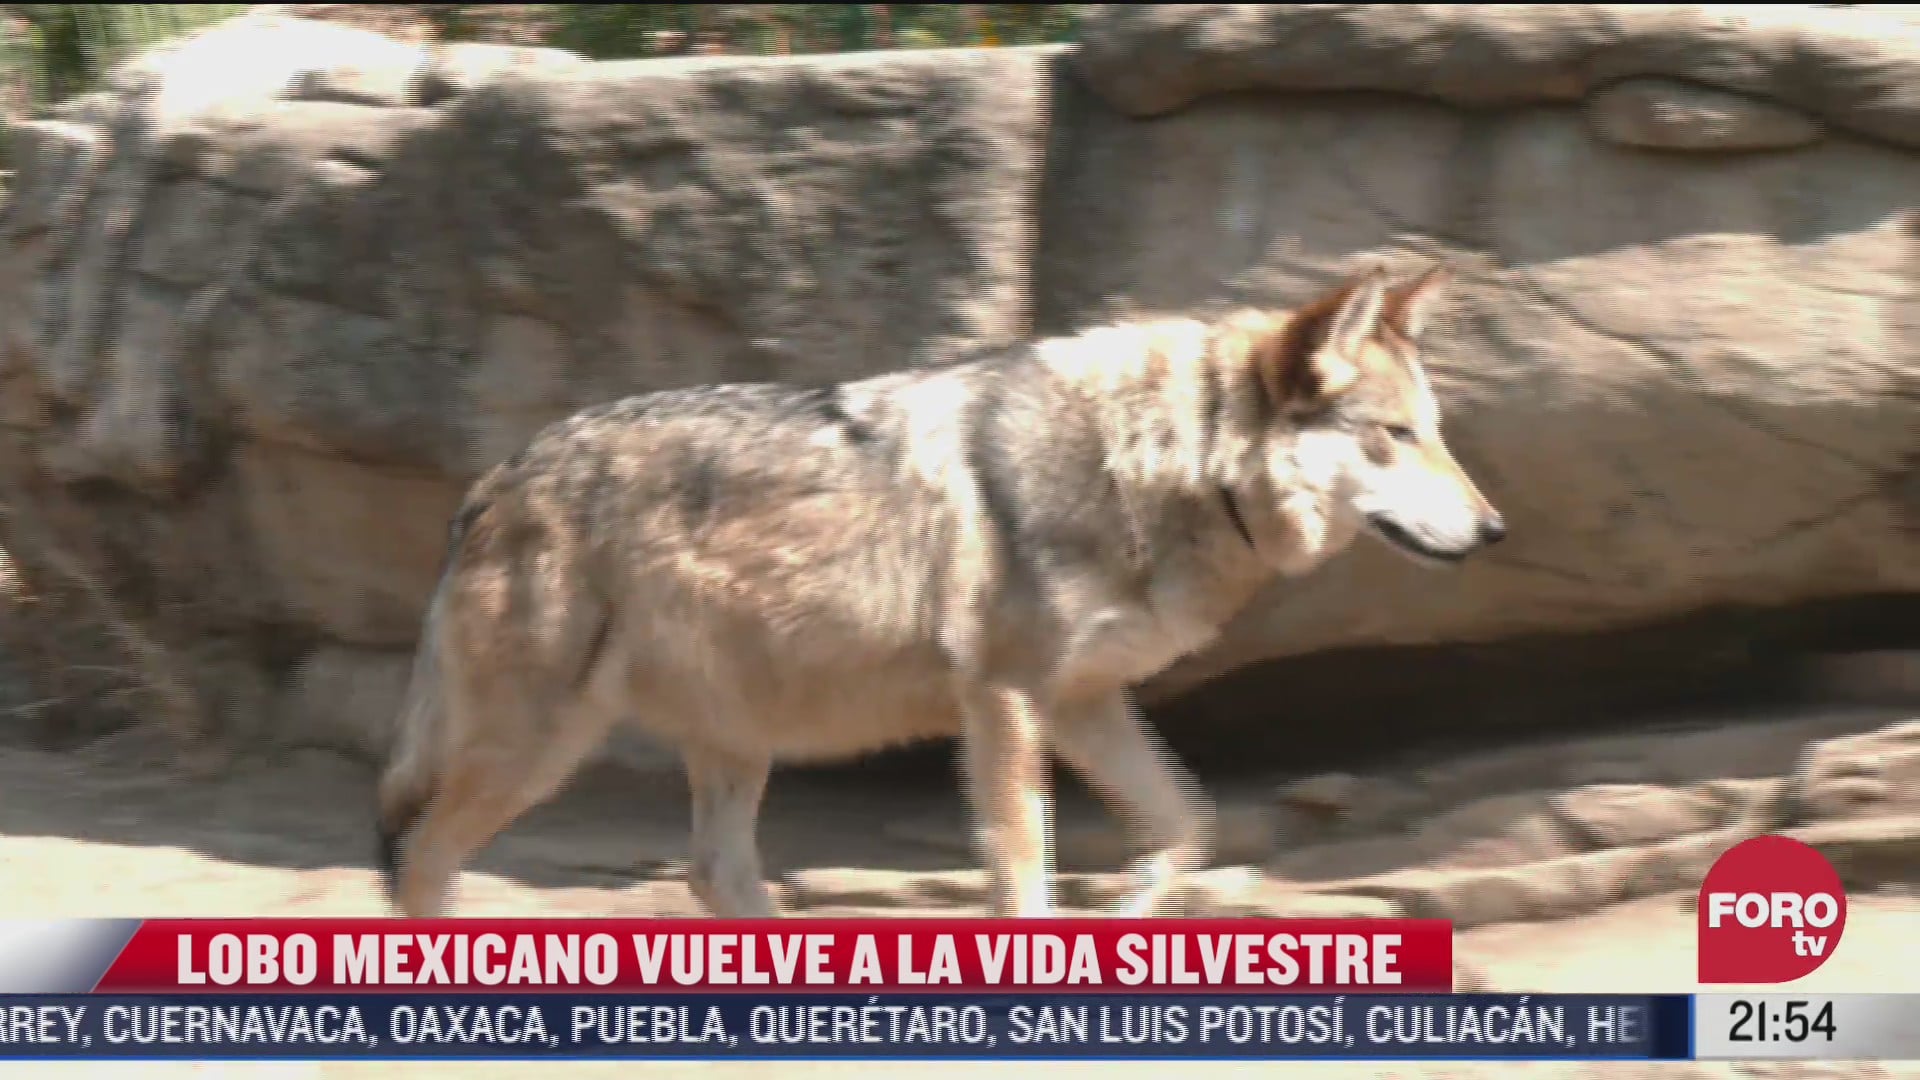 asi es el exitoso programa entre eeuu y mexico que salvo al lobo mexicano de la extincion